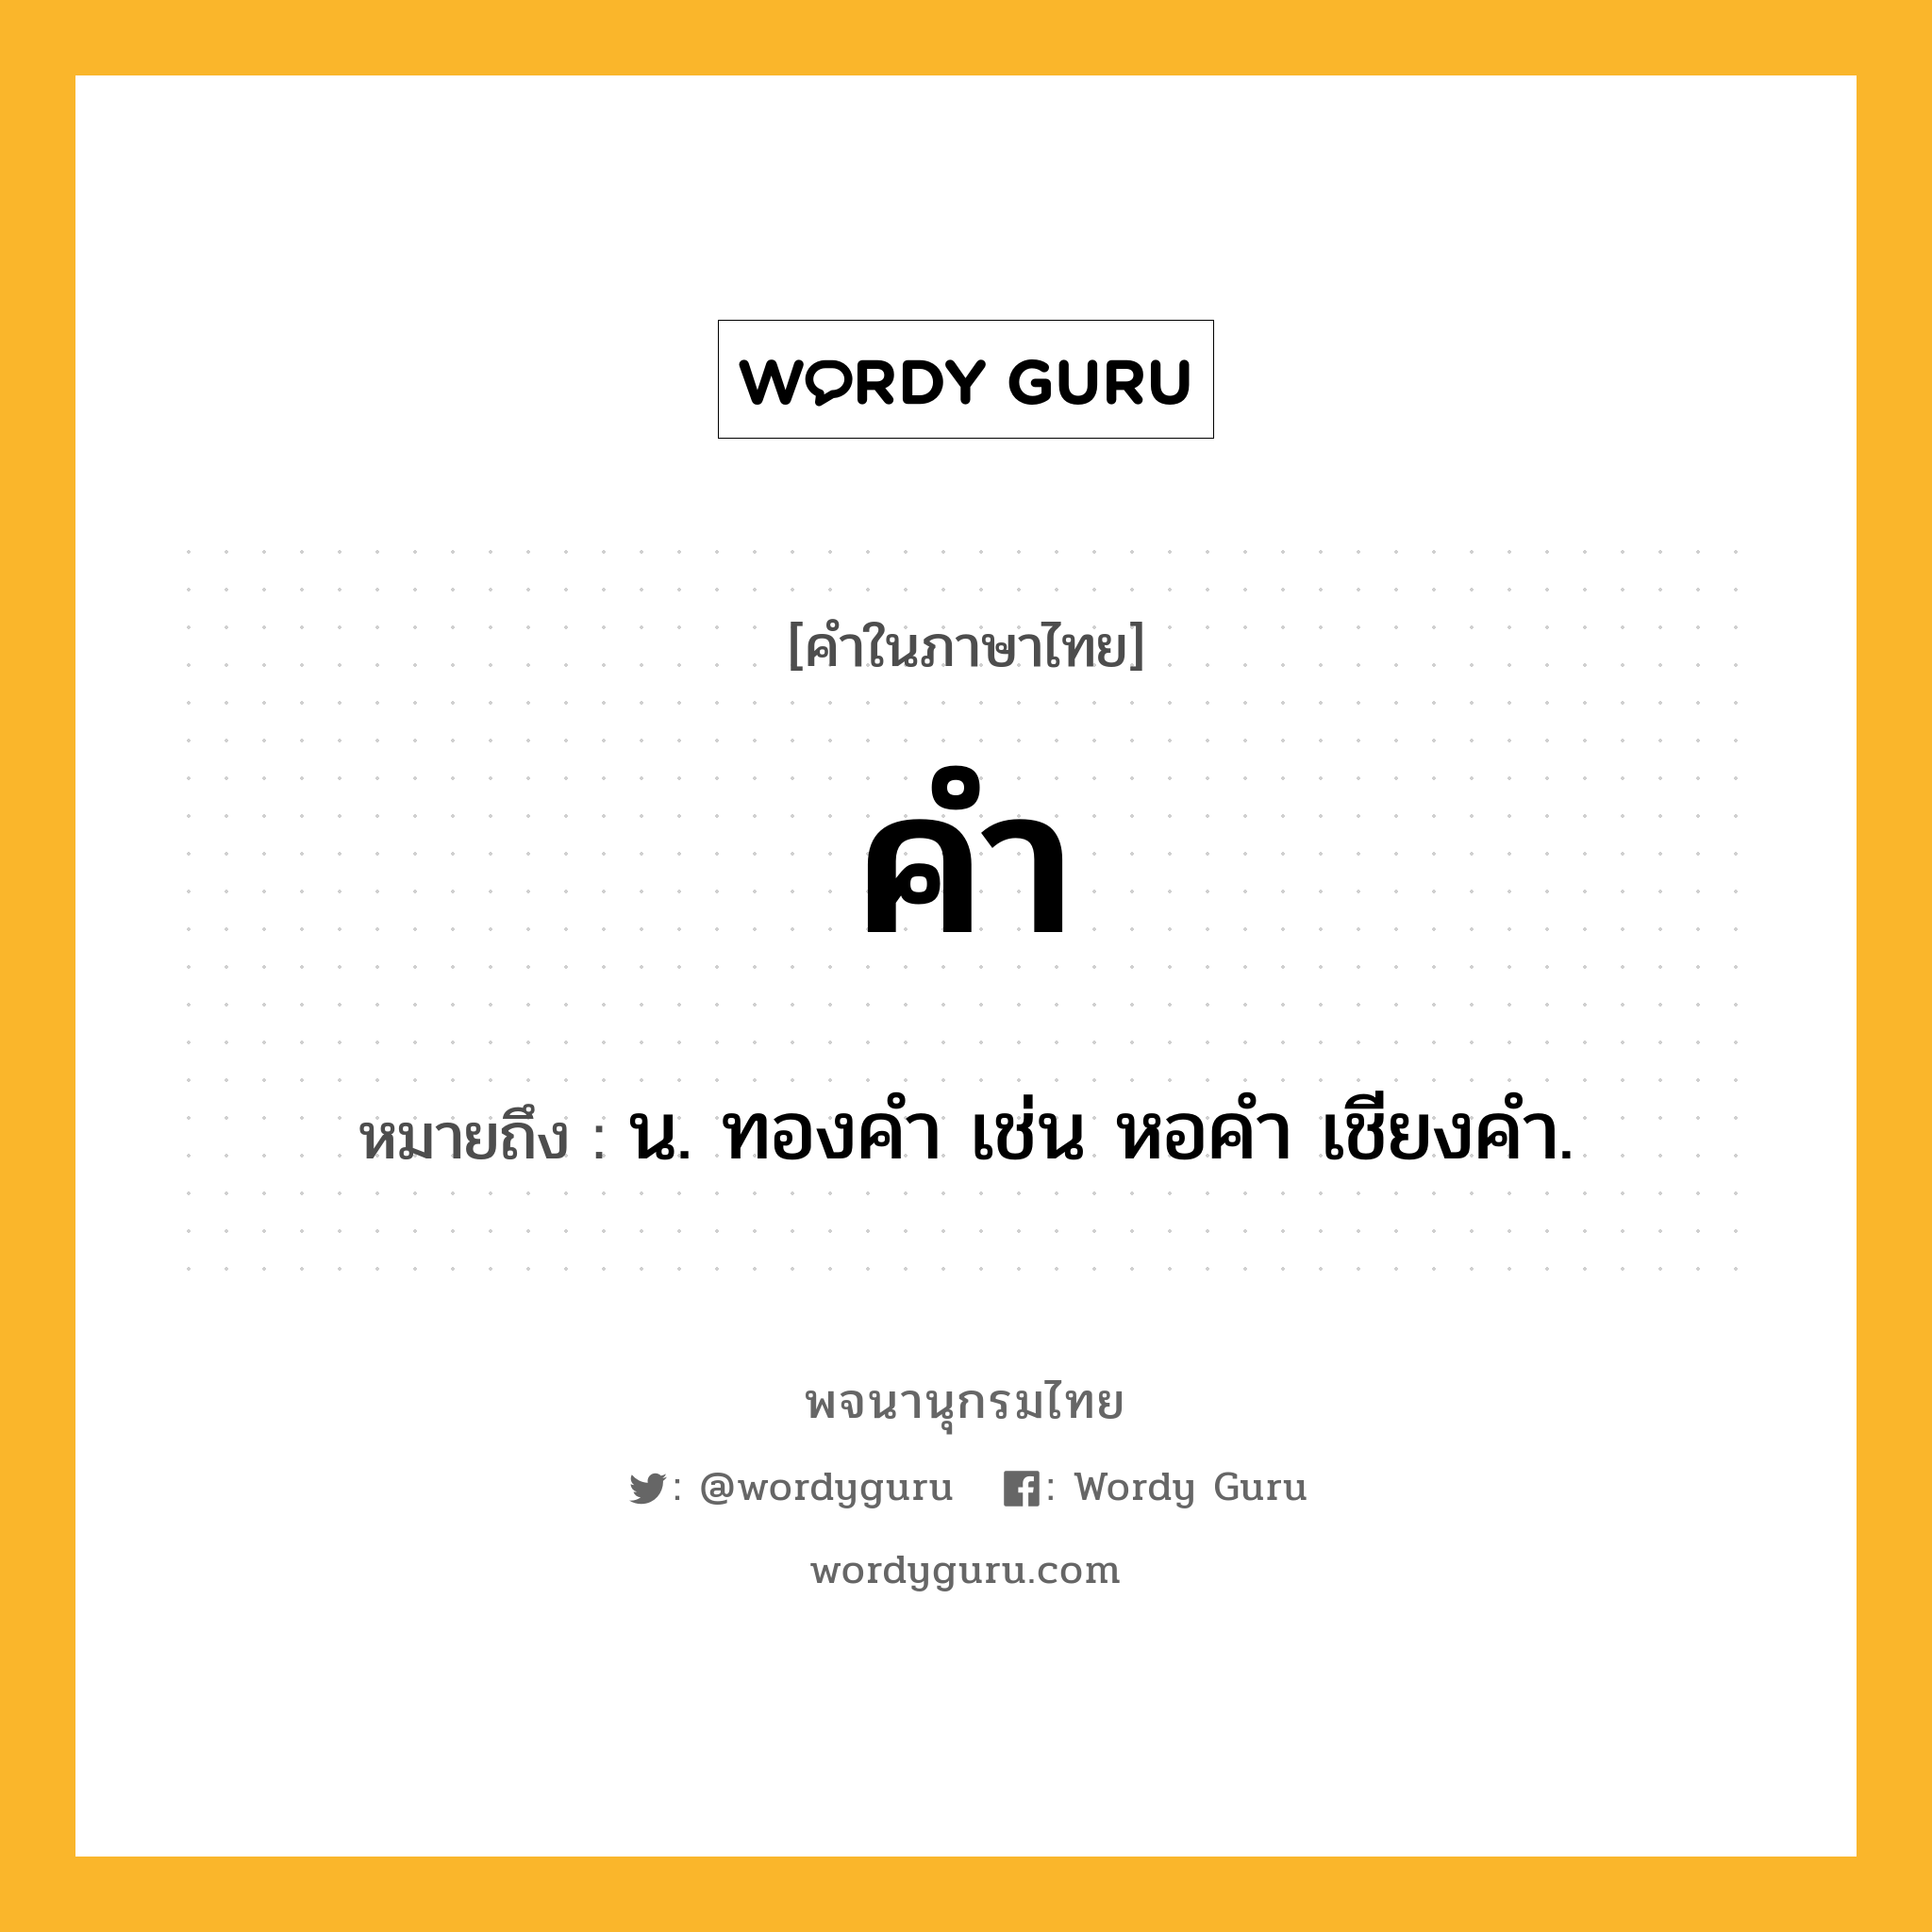 คำ หมายถึงอะไร?, คำในภาษาไทย คำ หมายถึง น. ทองคํา เช่น หอคำ เชียงคำ.